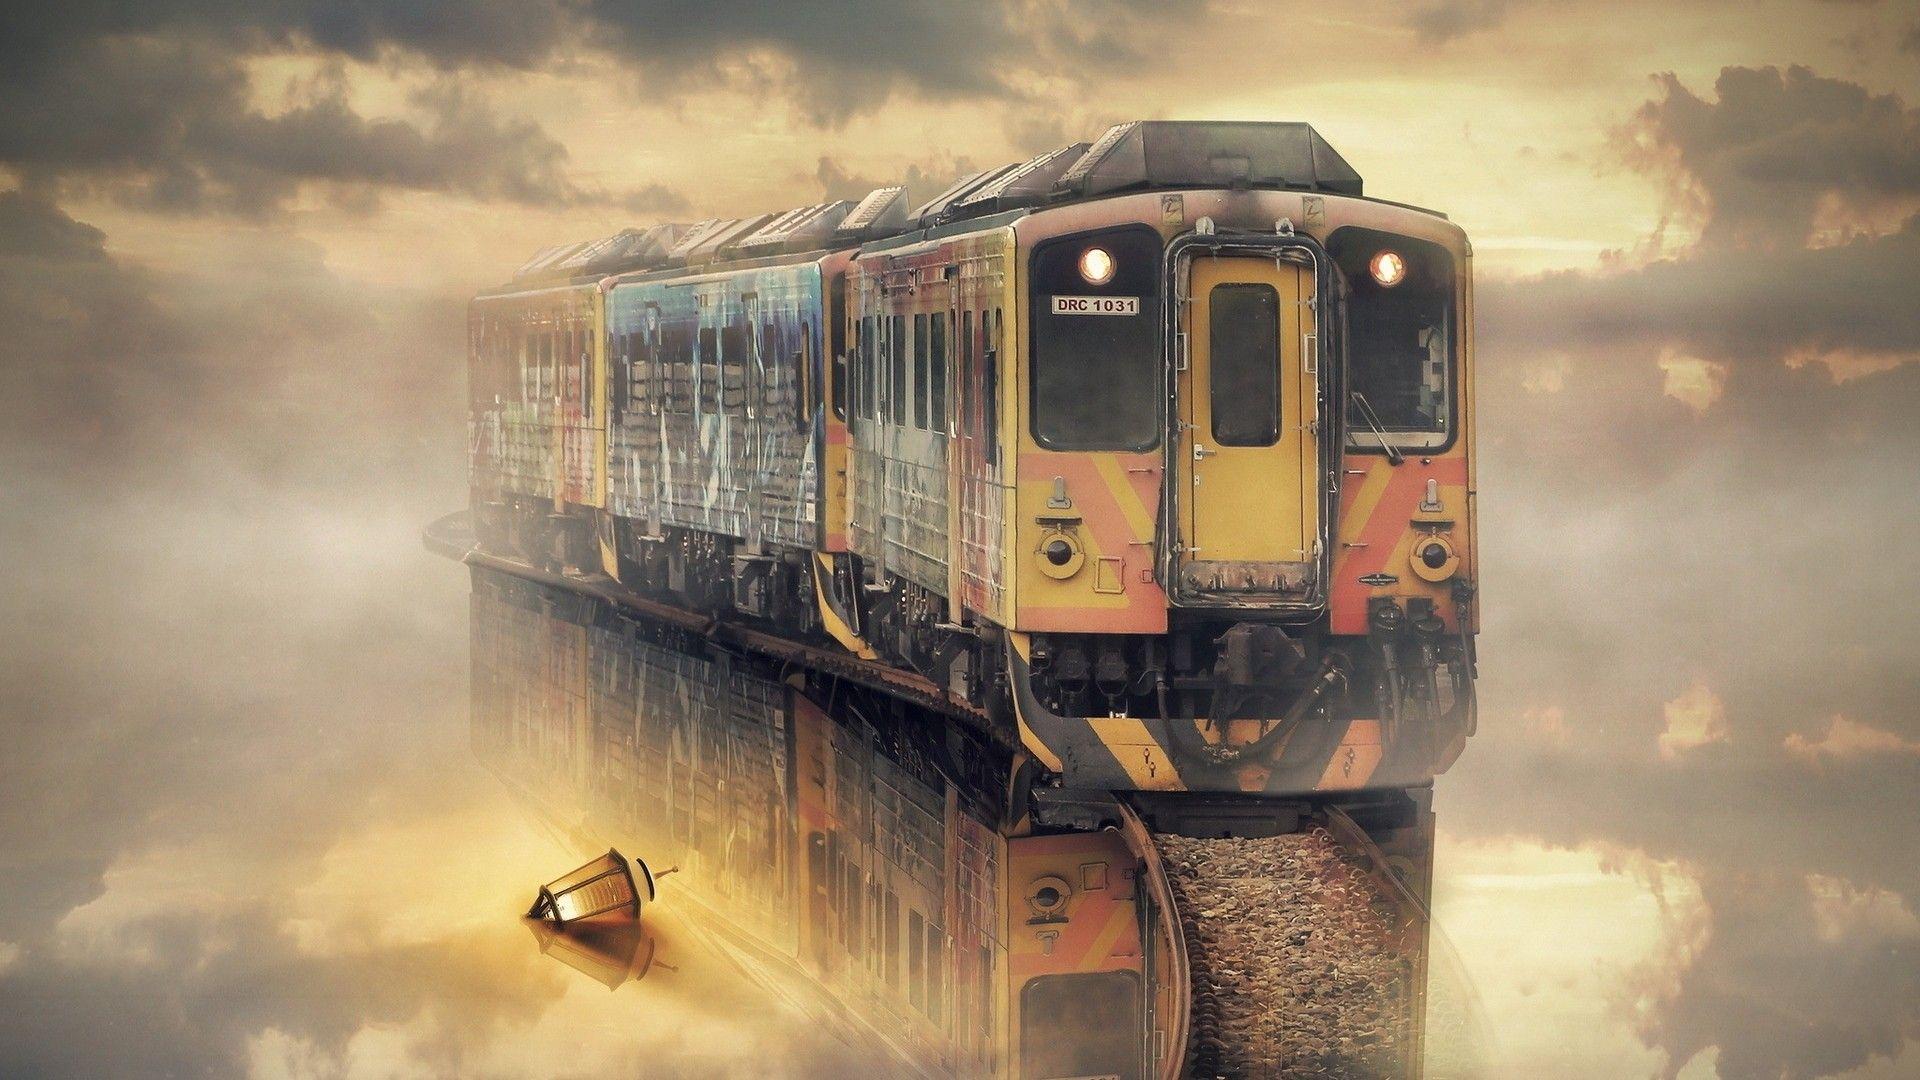 Beautiful Railway Station Image HD Wallpaper. Beautiful image HD